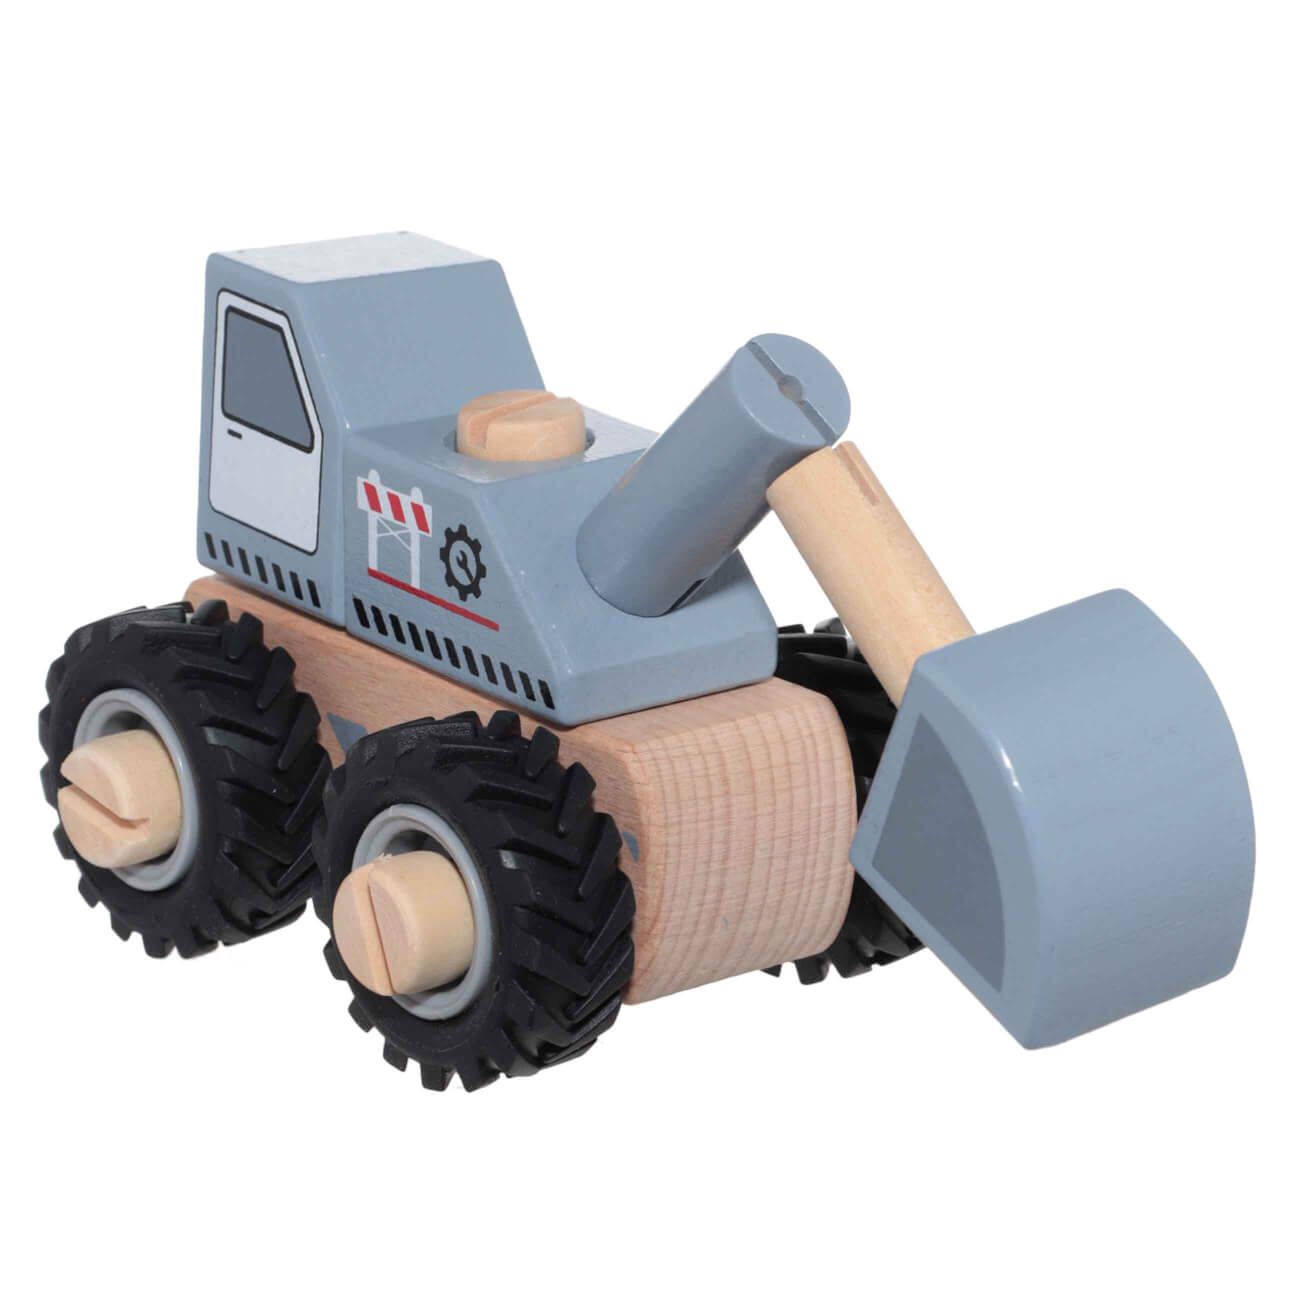 Игрушка, 18х11 см, дерево, серая, Трактор- конструктор, Kiddy развивающая игрушка полесье трактор арт 89403 8